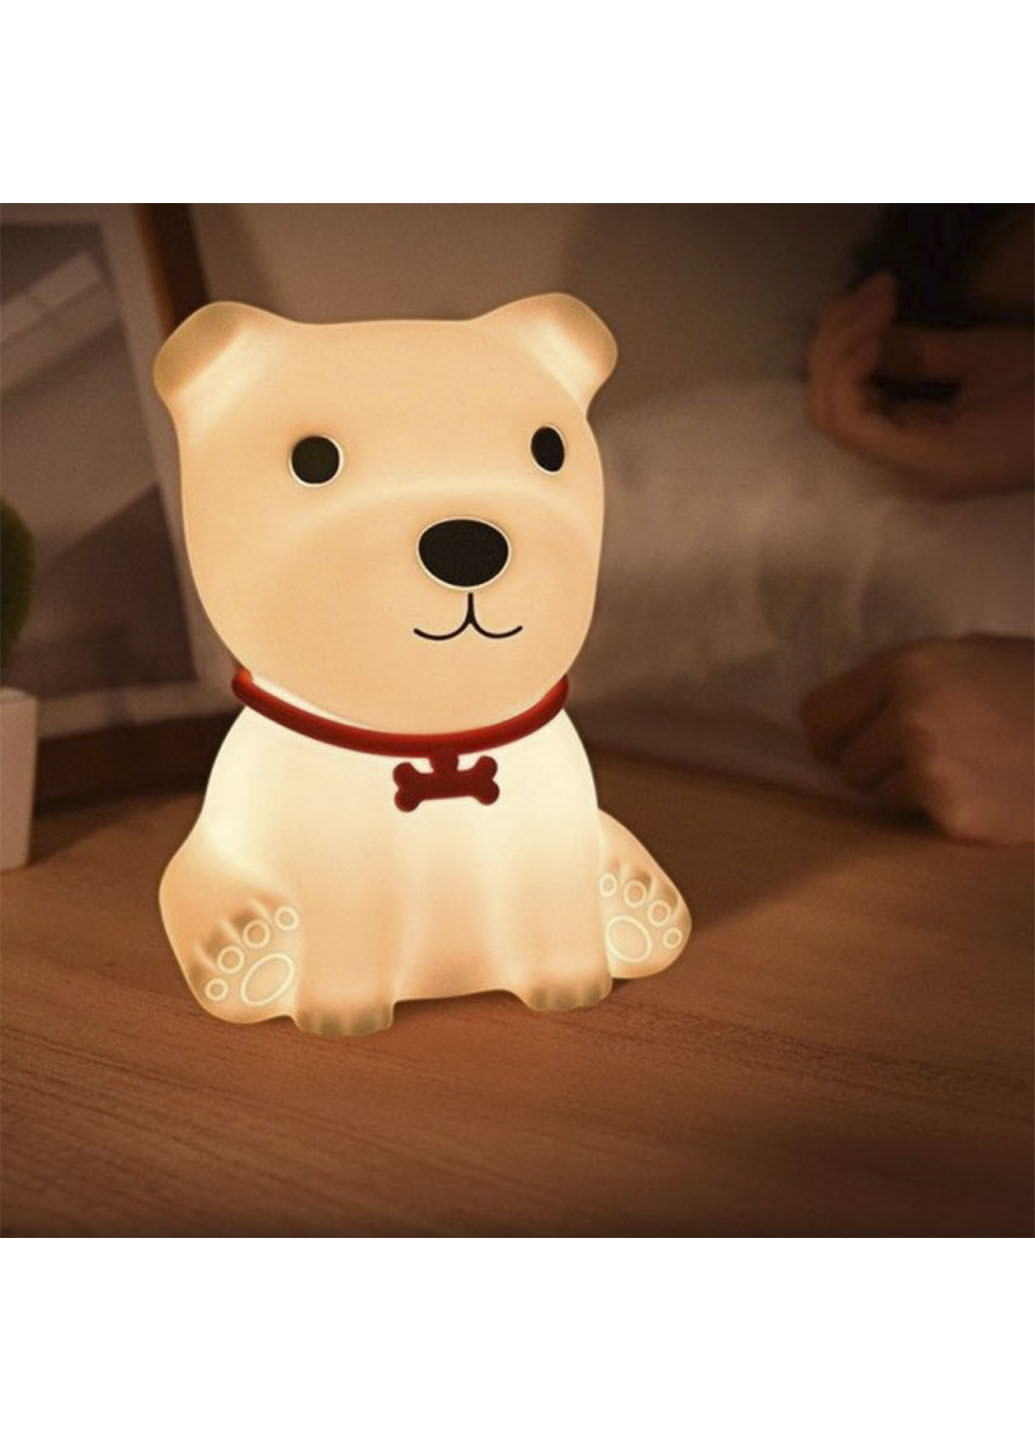 Детский ночник медвежонок Dream Lites Puppy силиконовый светильник, аккумуляторный, 7 цветов свечения Bailong (255722731)